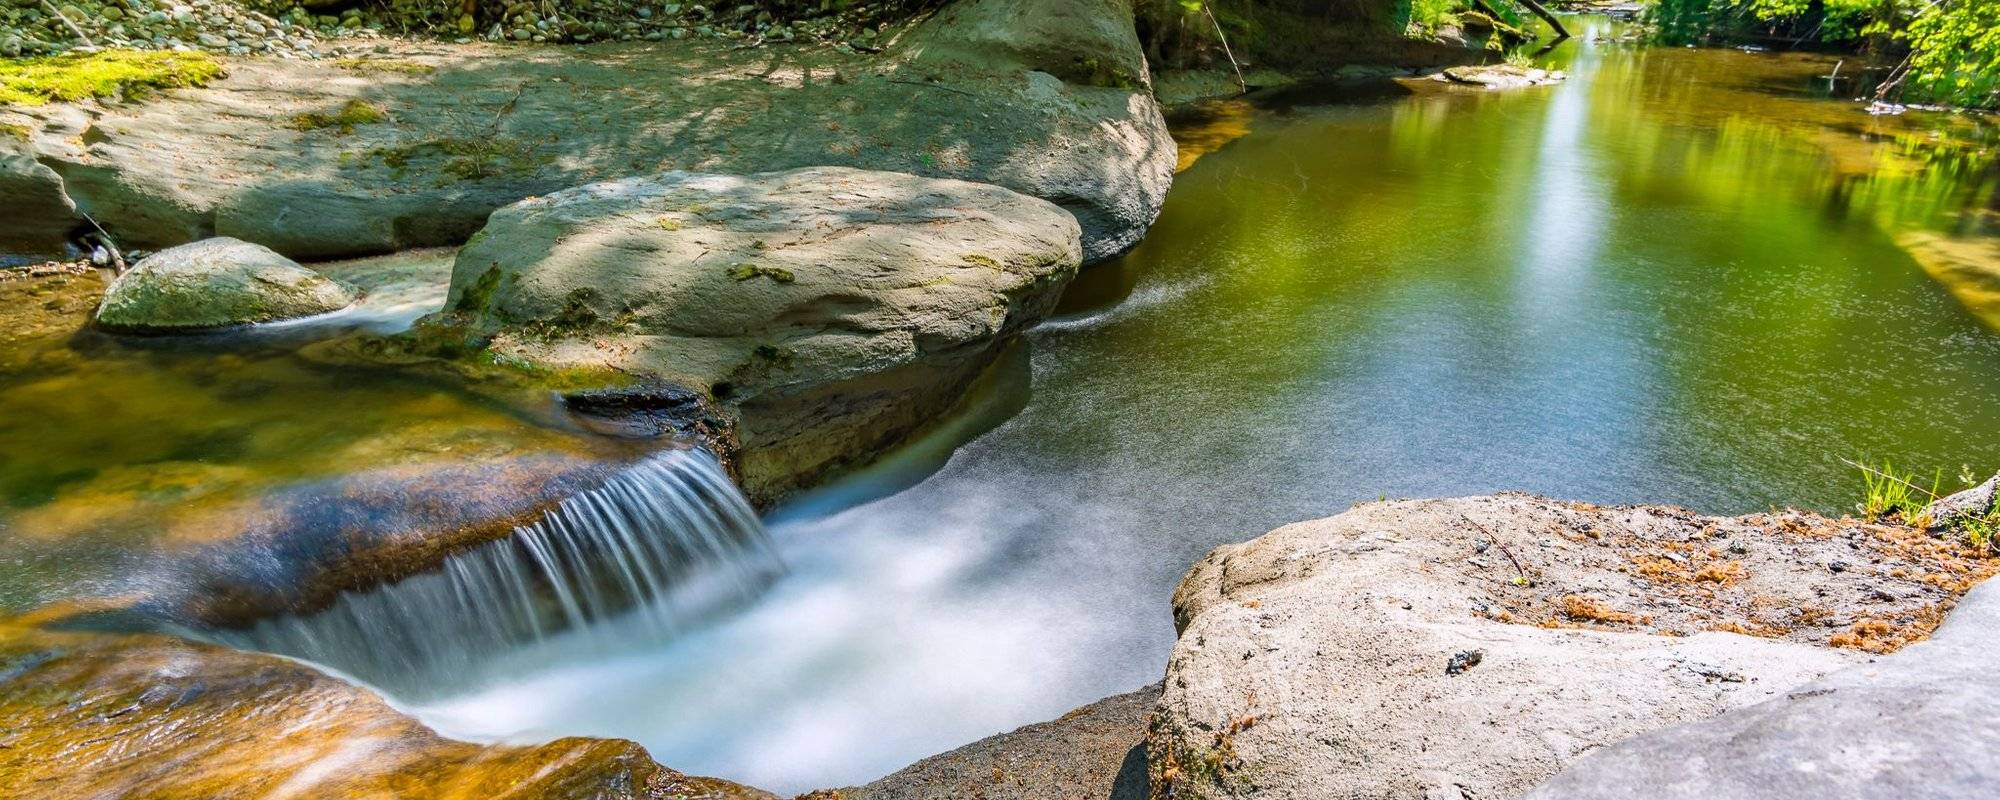 How a river created a small nature paradise in Upper Swabia - Wie ein Fluss in Oberschwaben ein kleines Naturparadies schuf [EN/DE]